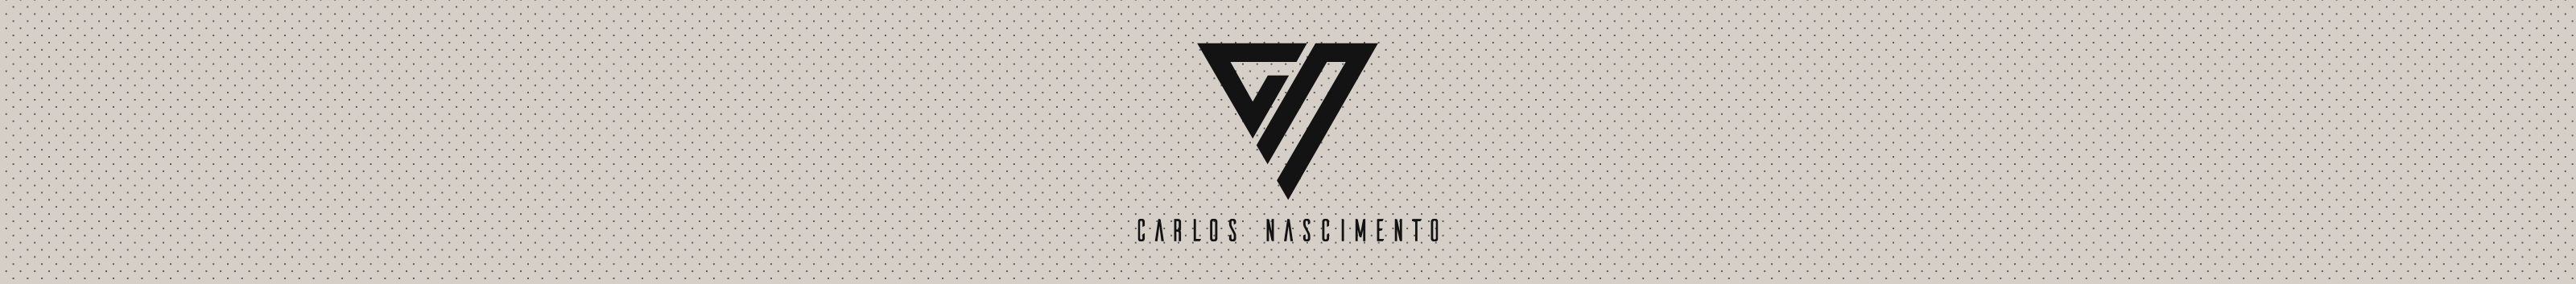 Carlos Nascimento's profile banner